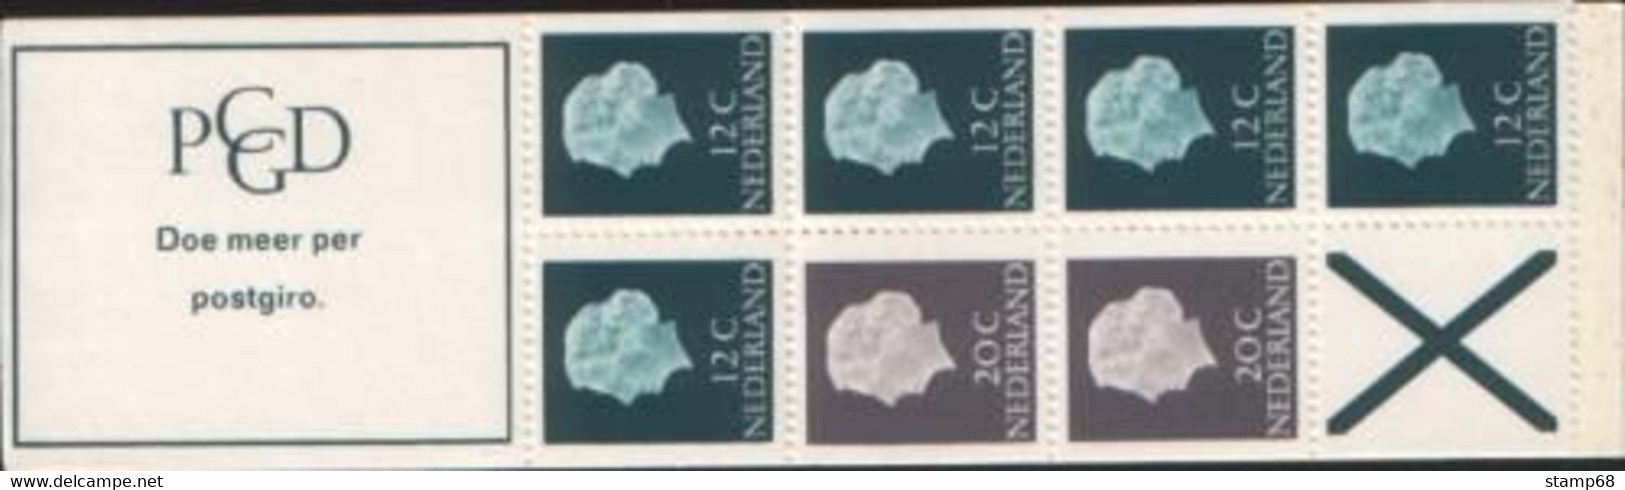 Nederland NVPH PB7b Postzegelboekje 1967 MNH Postfris - Postzegelboekjes En Roltandingzegels